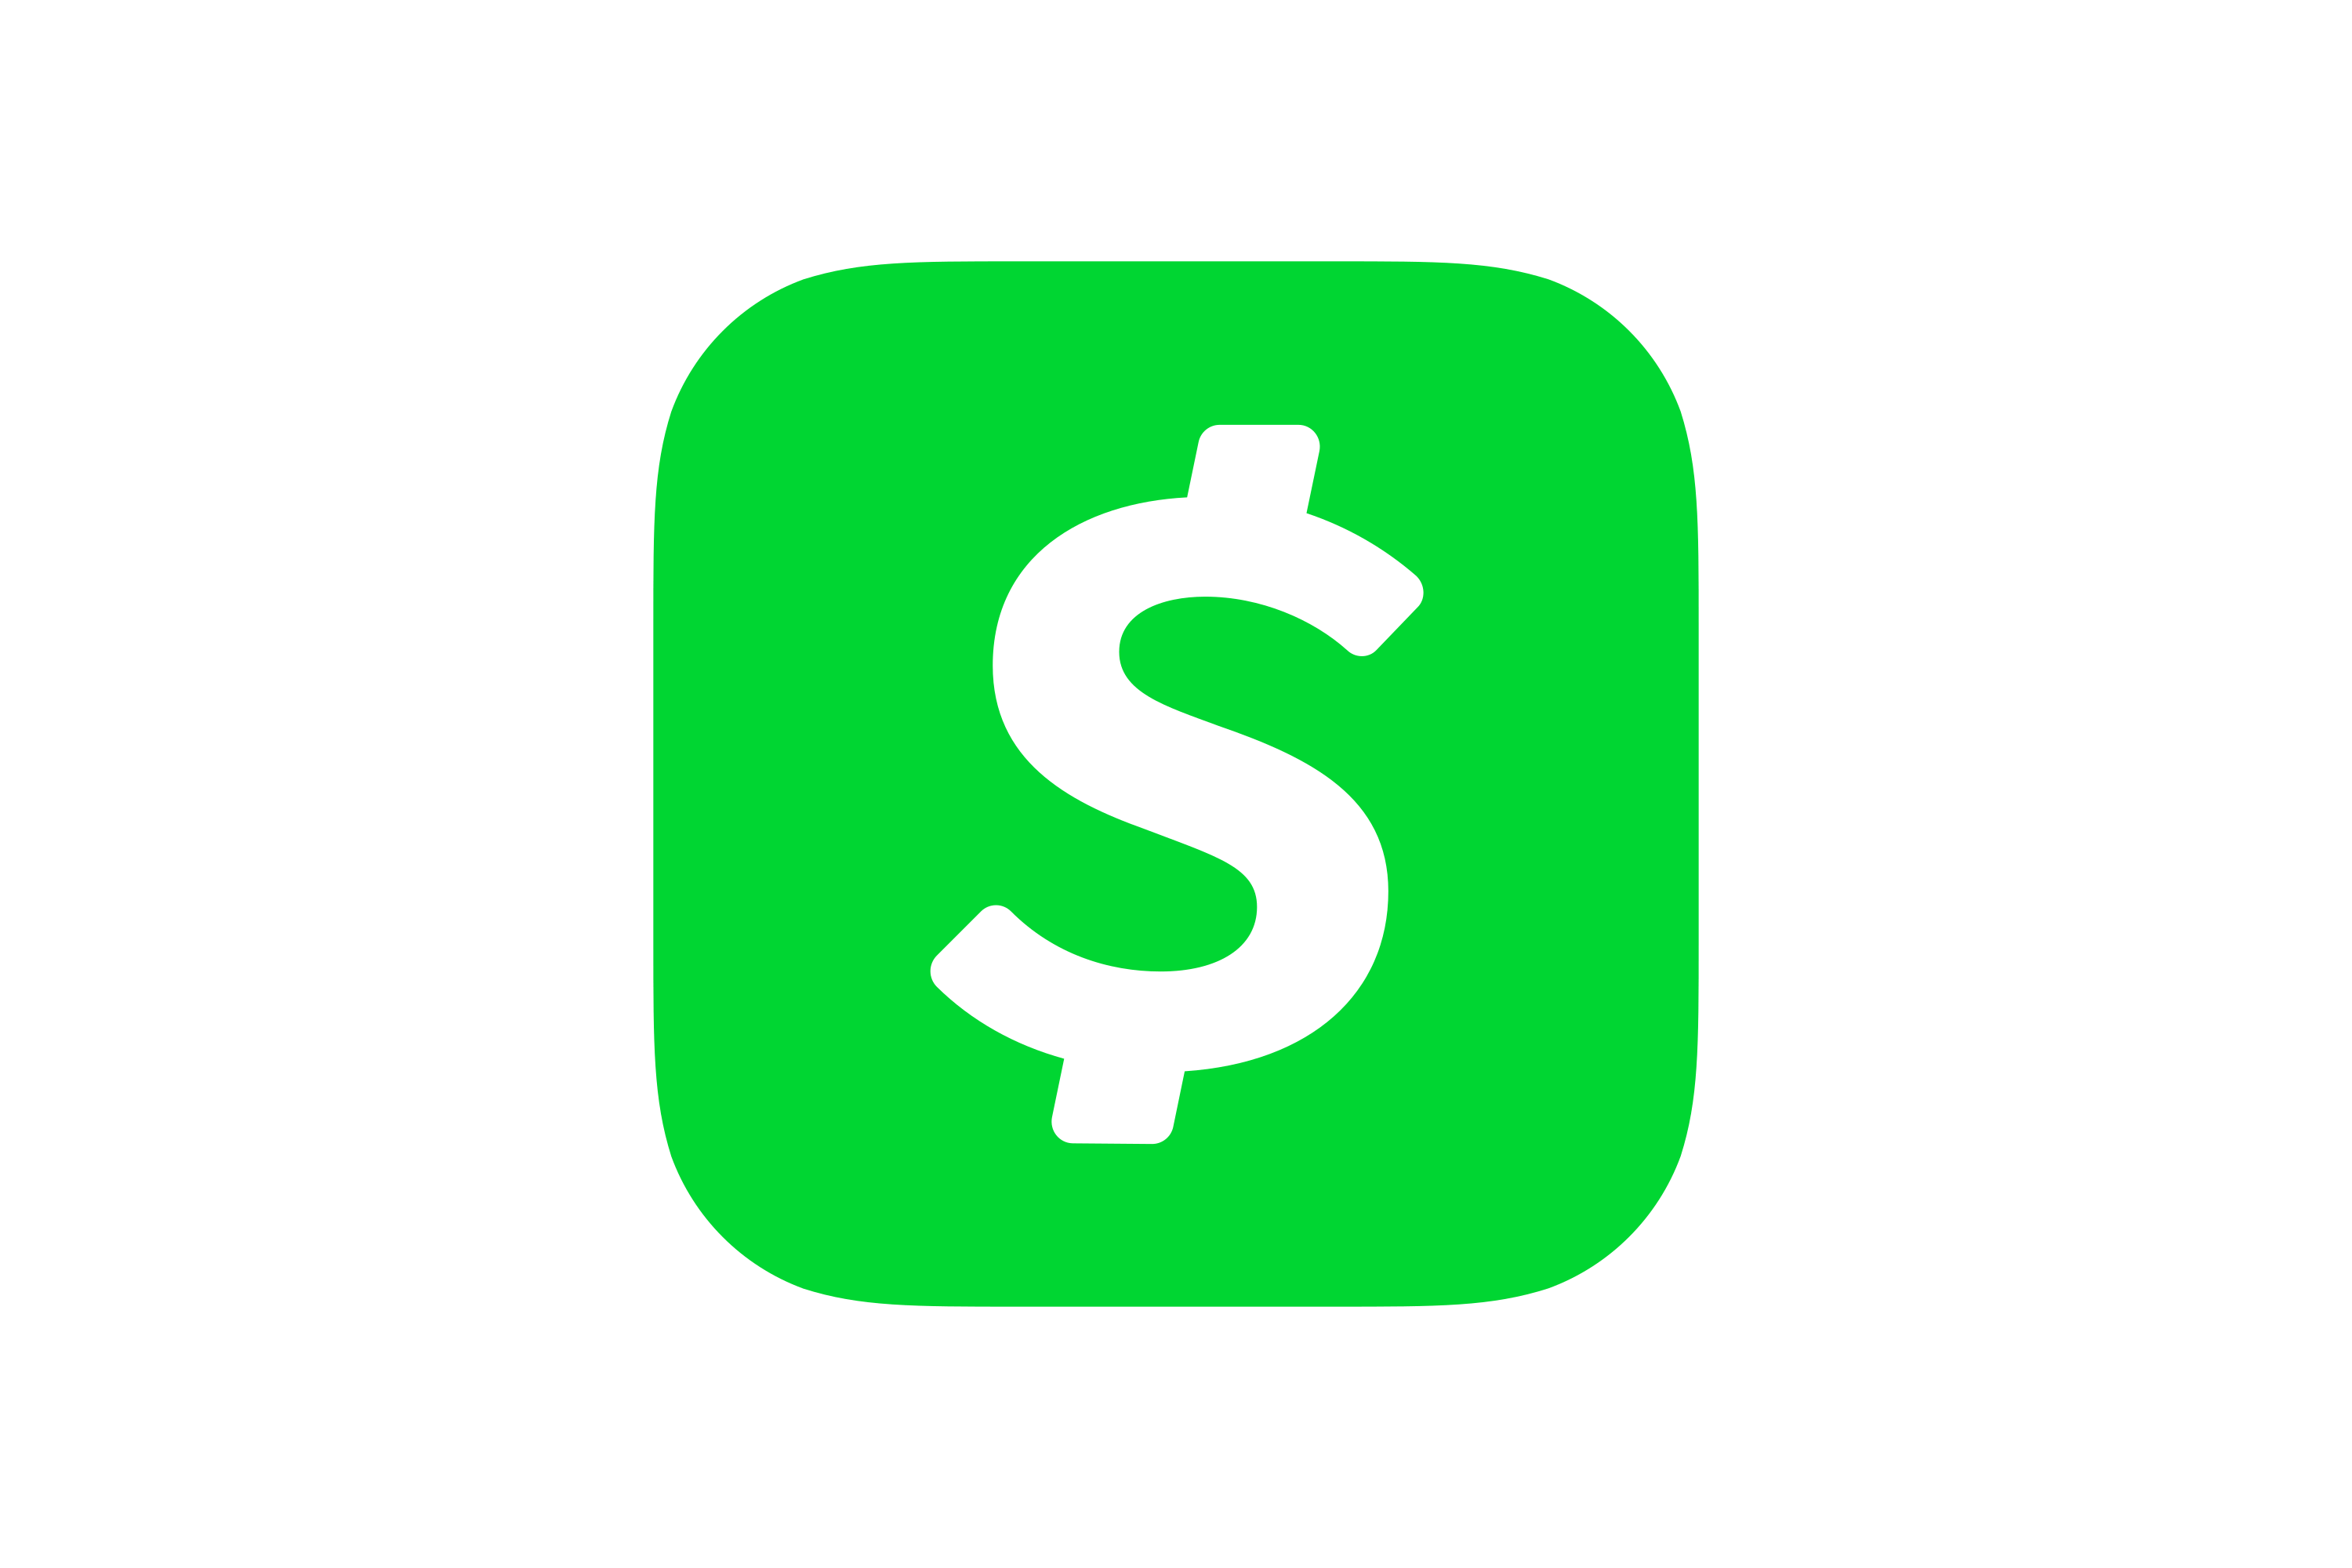 Cash, Checks, and Cash App